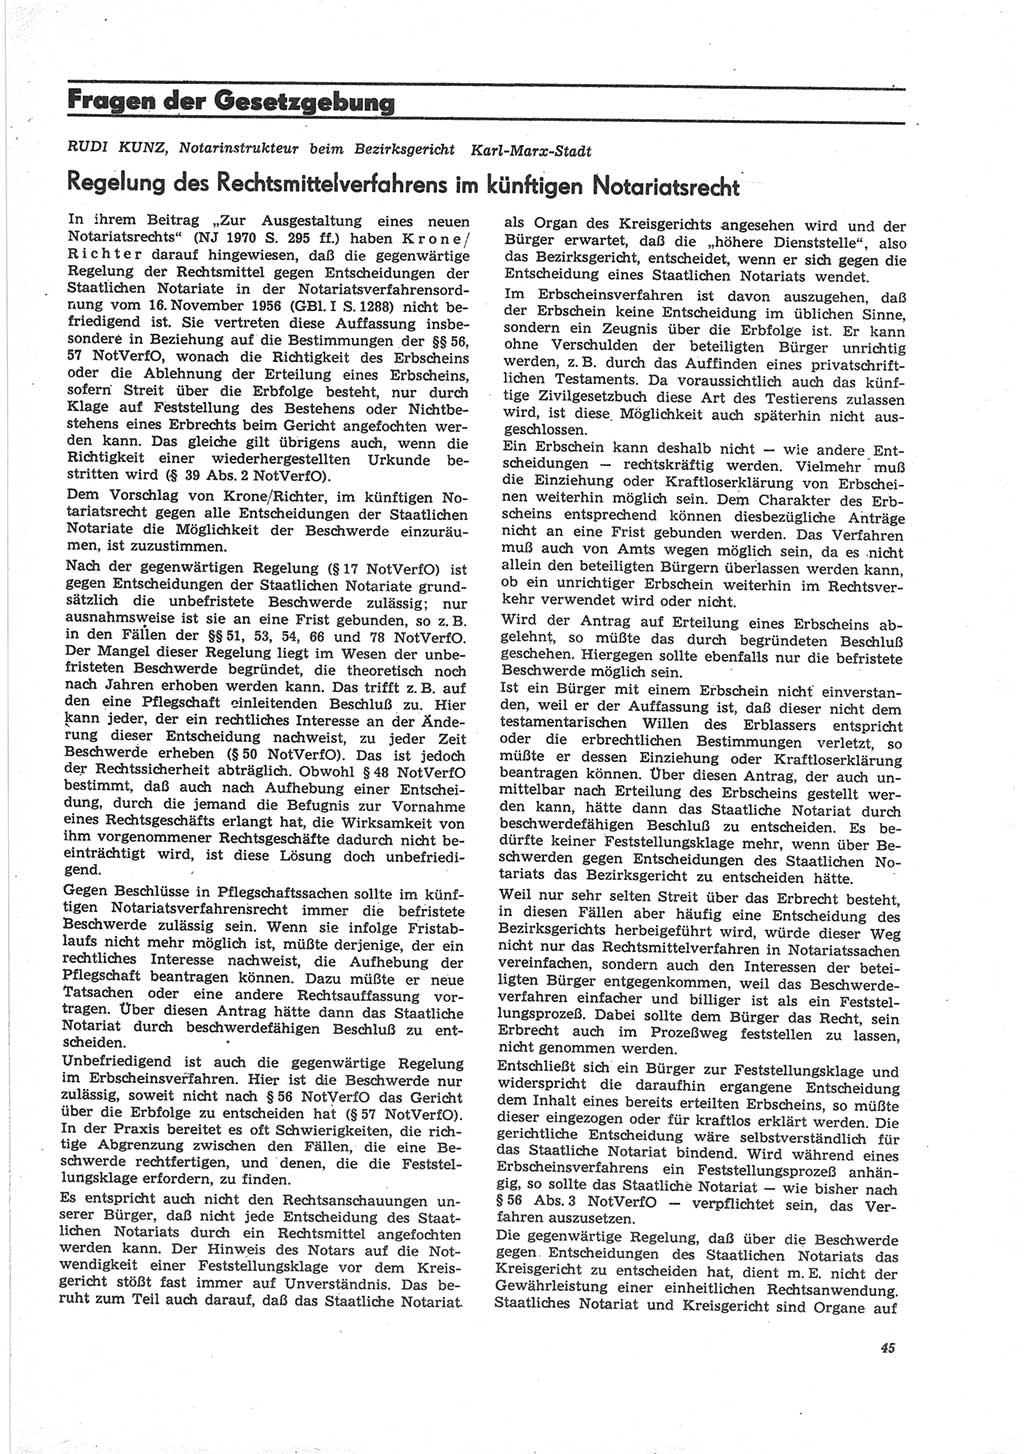 Neue Justiz (NJ), Zeitschrift für Recht und Rechtswissenschaft [Deutsche Demokratische Republik (DDR)], 25. Jahrgang 1971, Seite 45 (NJ DDR 1971, S. 45)